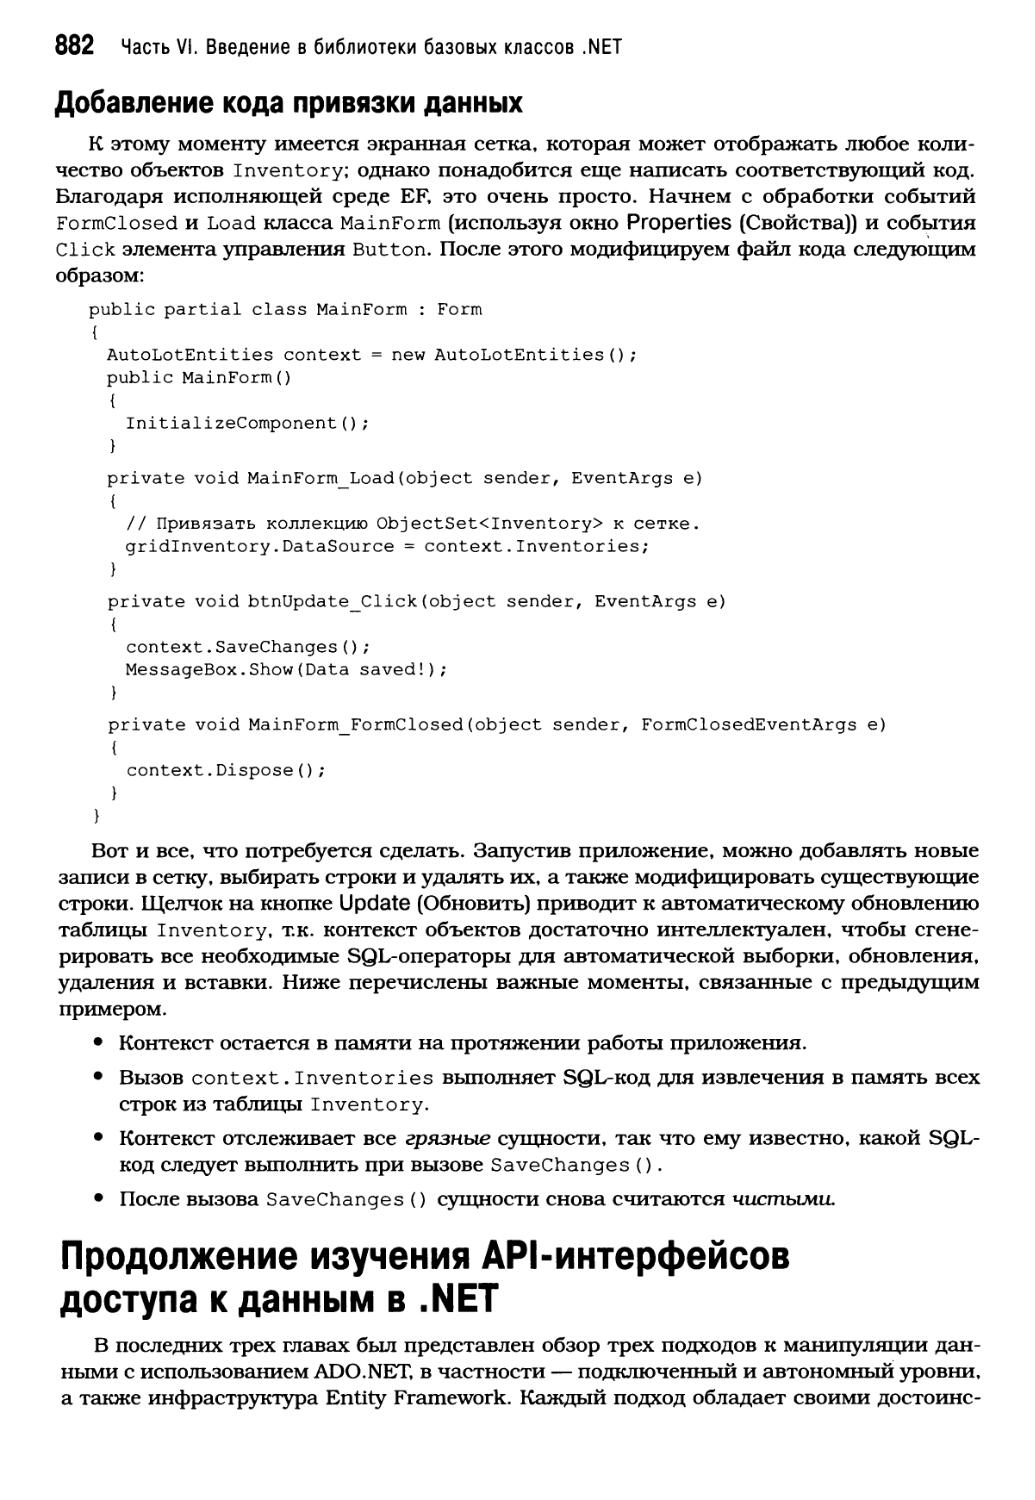 Продолжение изучения API-интерфейсов доступа к данным в .NET